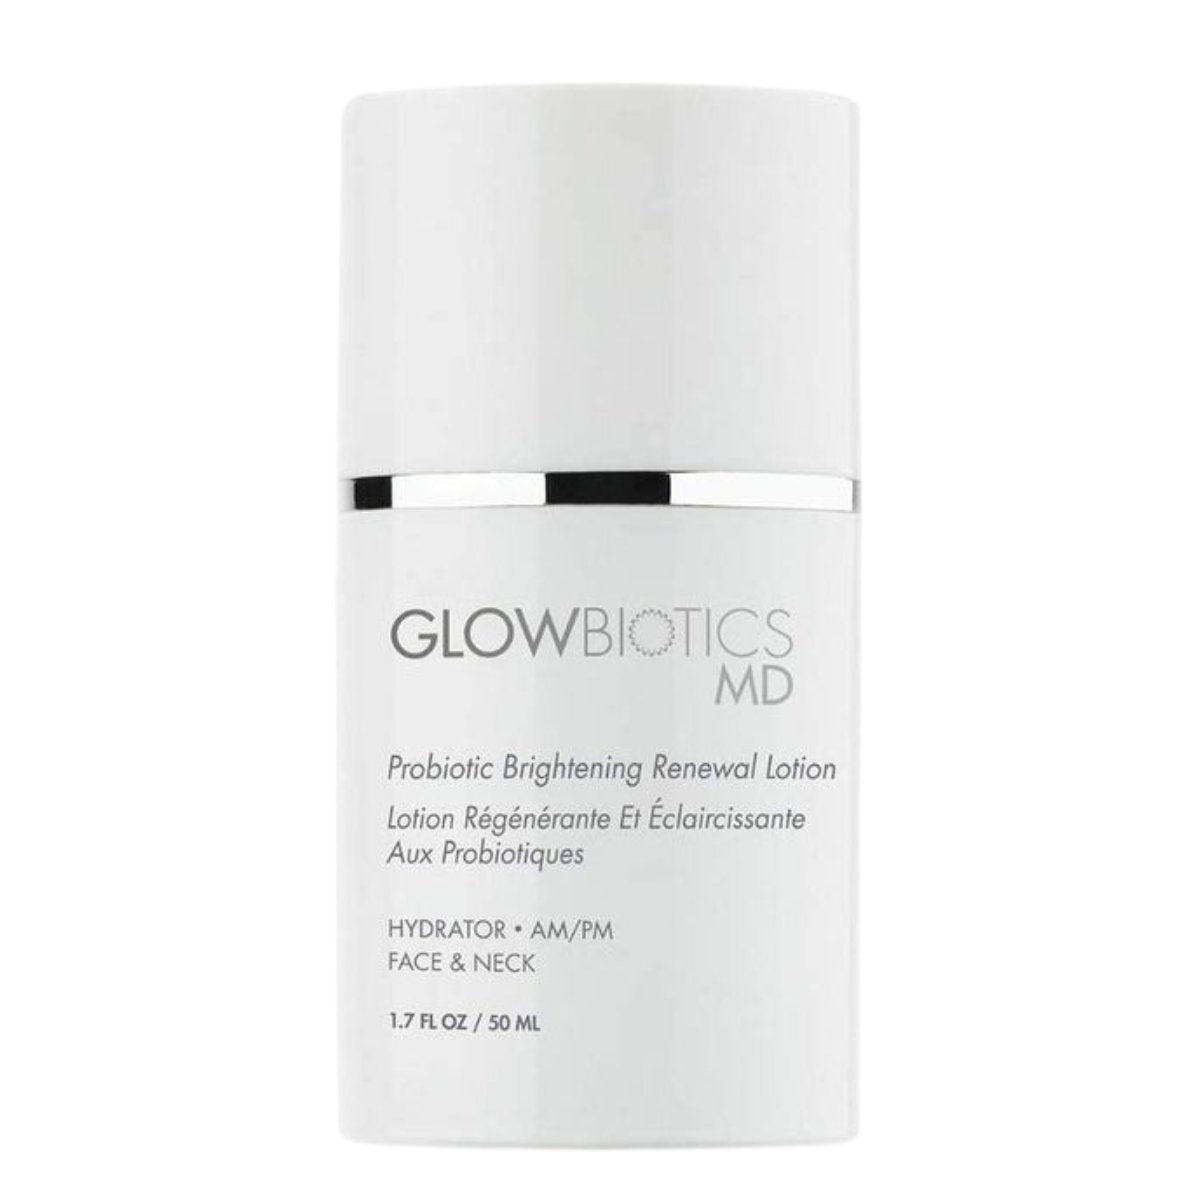 GLOWBIOTICS Probiotic Brightening Renewal Lotion - SkincareEssentials